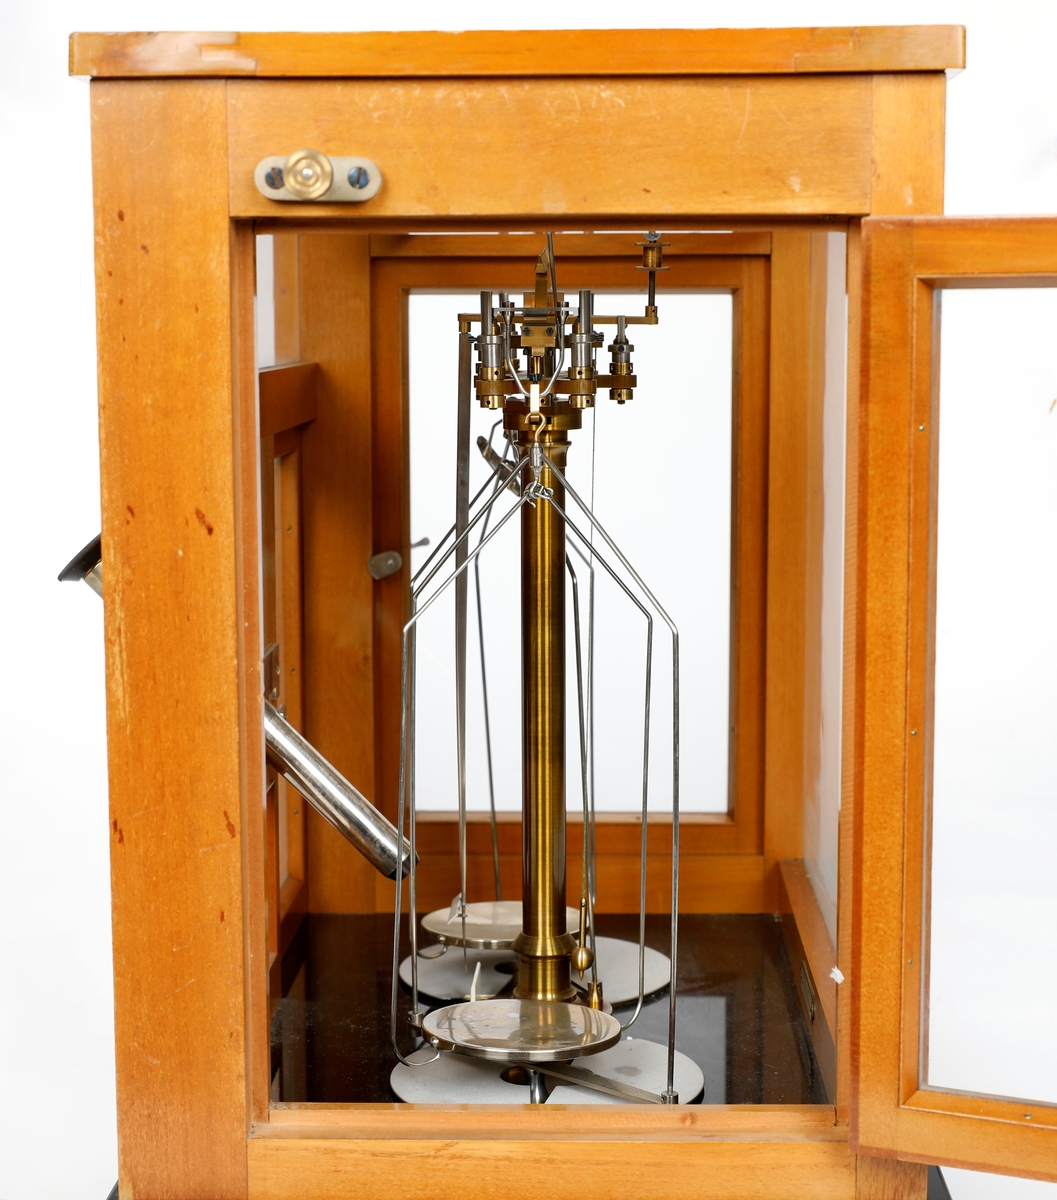 Analysevekt montert i trekasse med glass. Dører foran og på hver side. Glass i vegger, dører og tak. Mikroskop på midten foran.